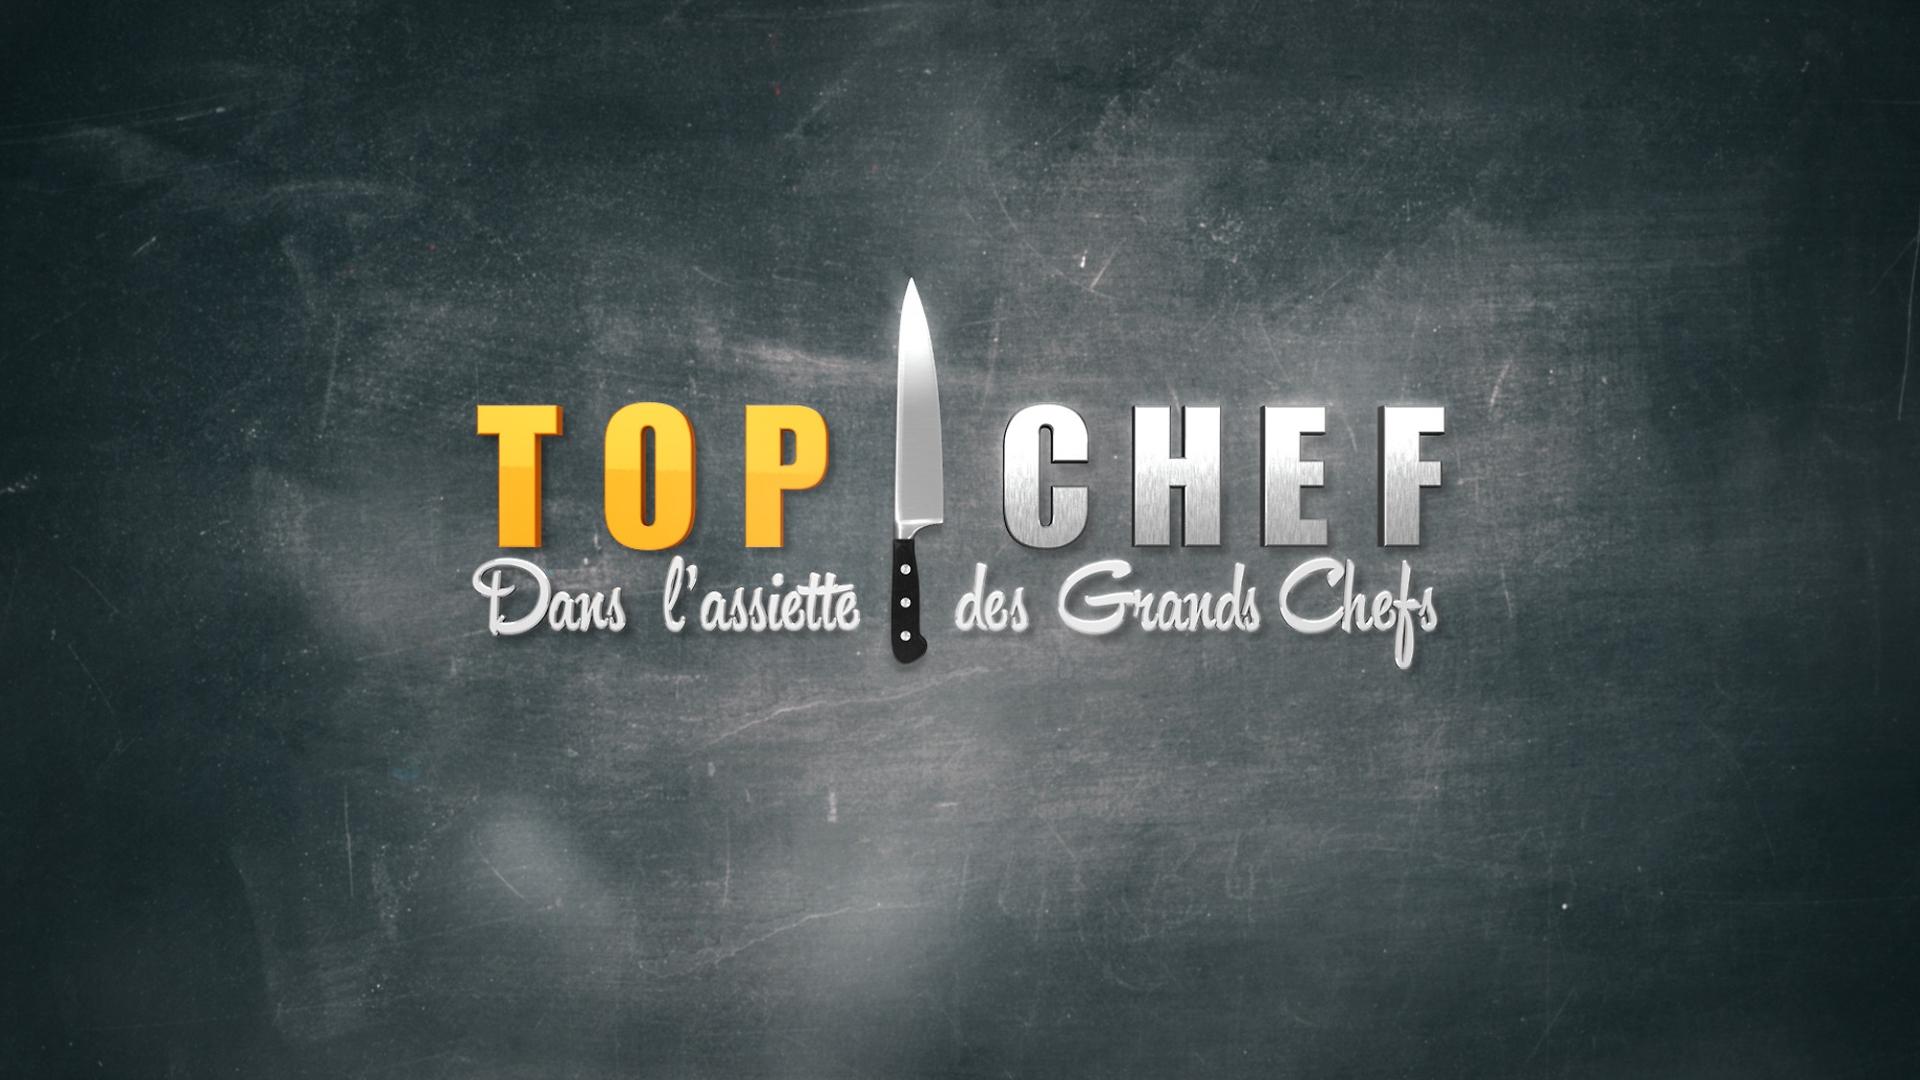 Top Chef France - Dans l'assiette des grands chefs